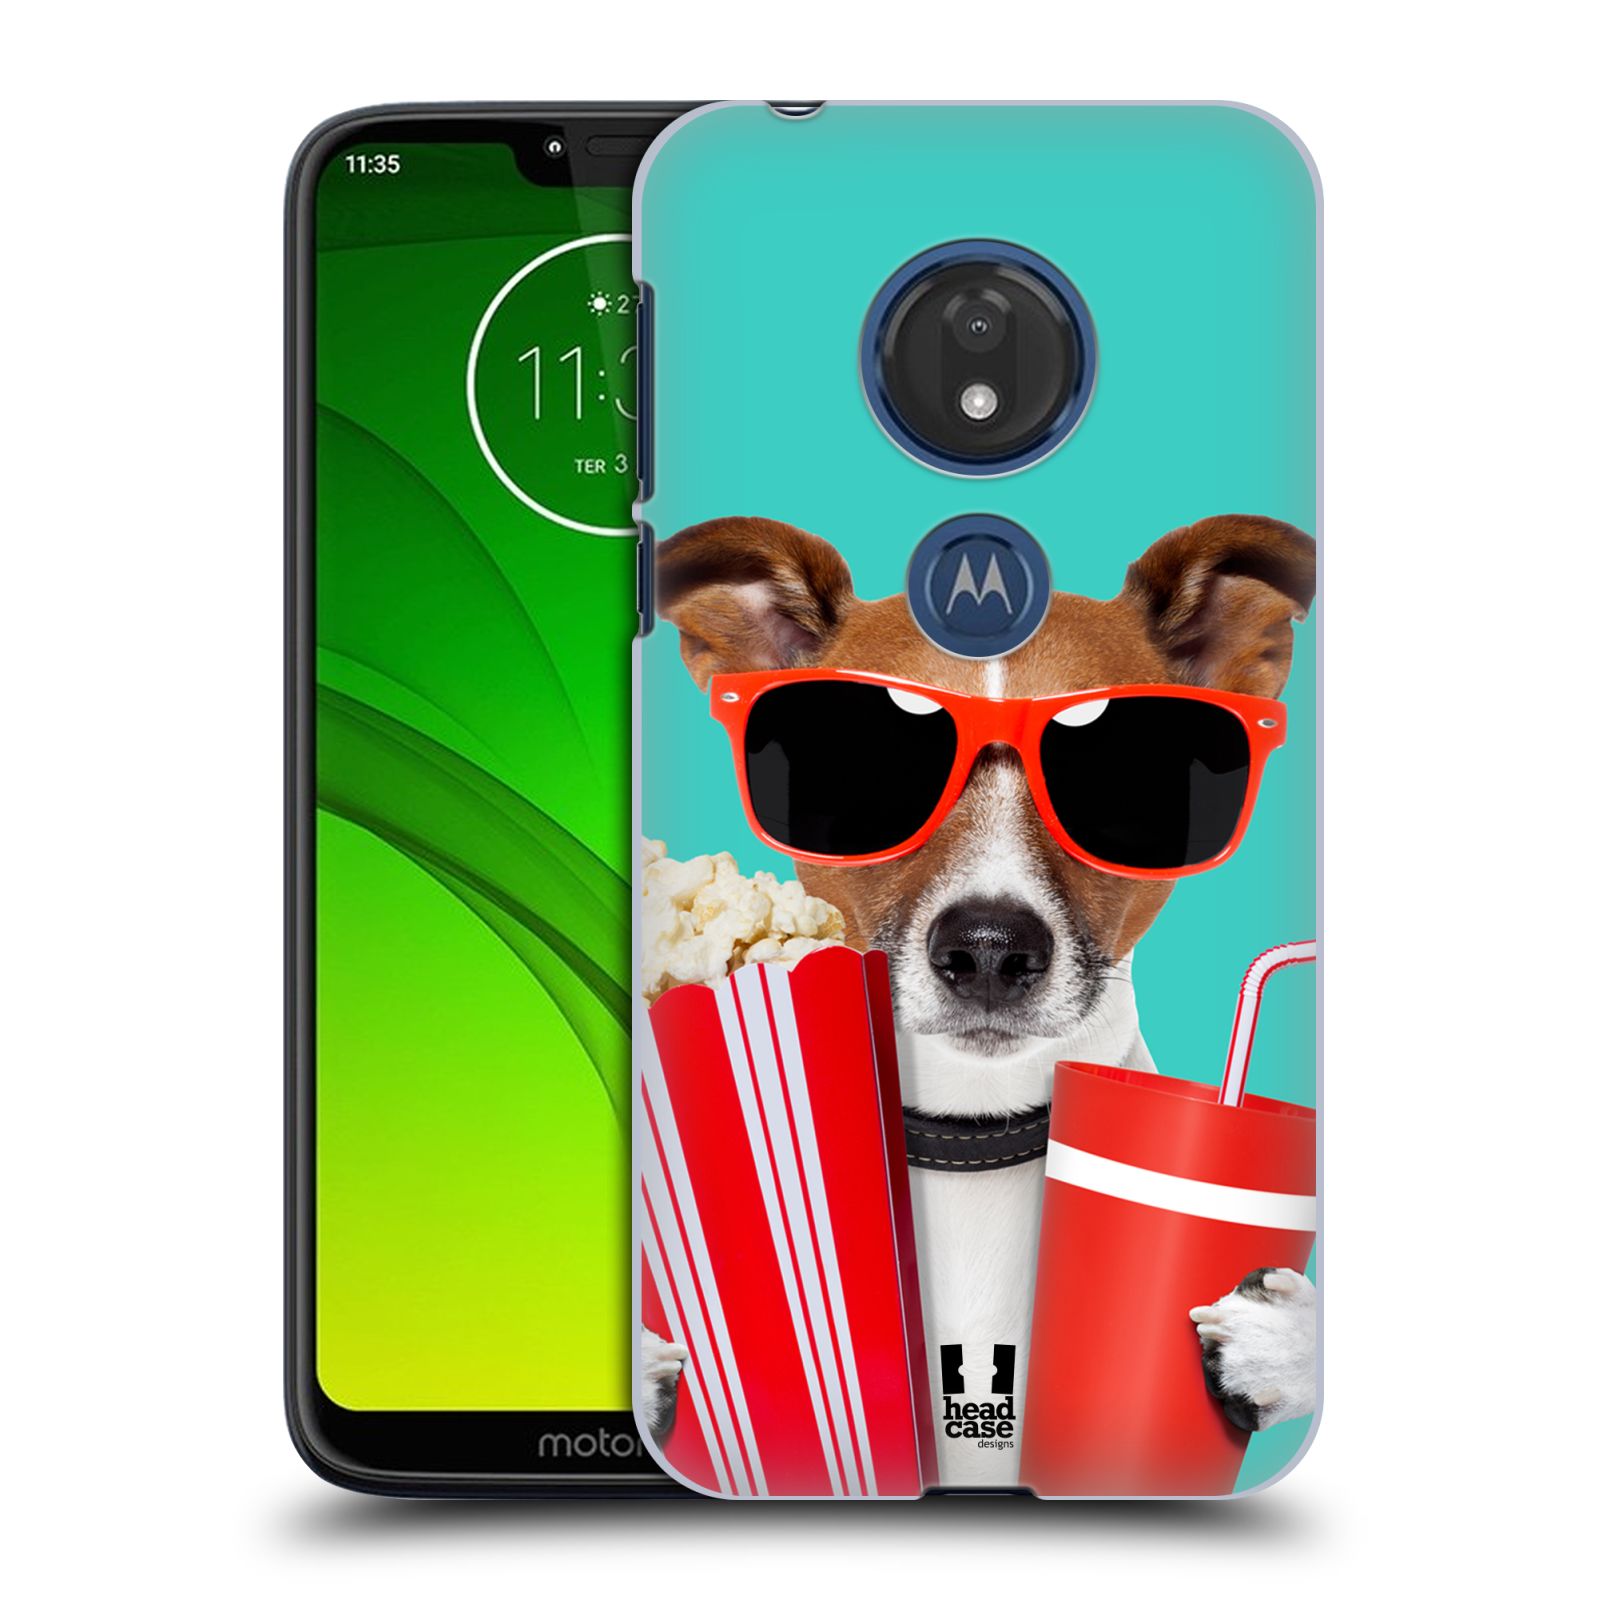 Pouzdro na mobil Motorola Moto G7 Play vzor Legrační zvířátka pejsek v kině s popkornem